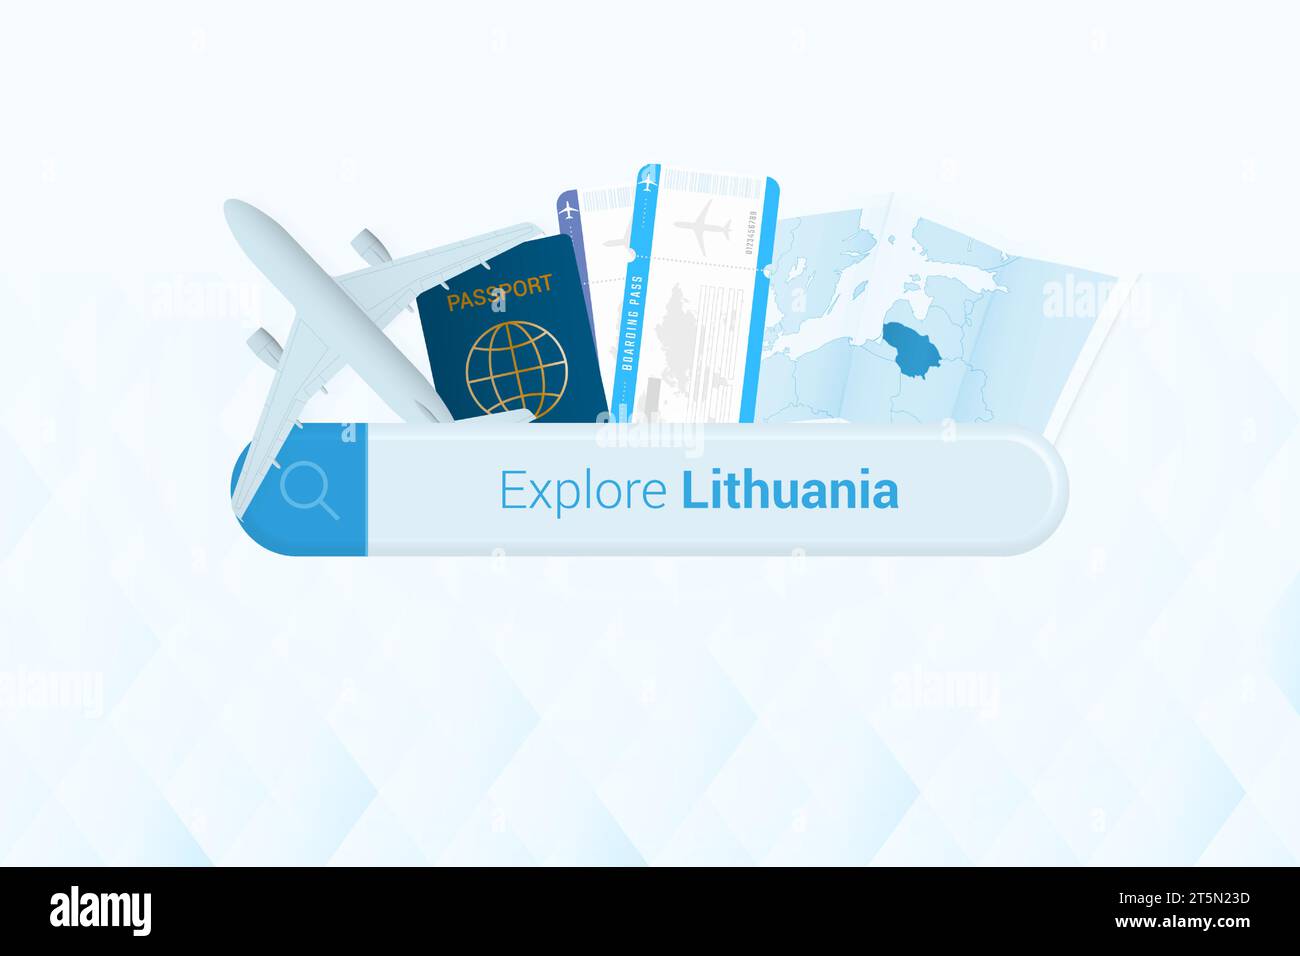 Ricerca di biglietti per la Lituania o destinazione di viaggio in Lituania. Ricerca bar con aereo, passaporto, carta d'imbarco, biglietti e mappa. Illus vettoriale Illustrazione Vettoriale